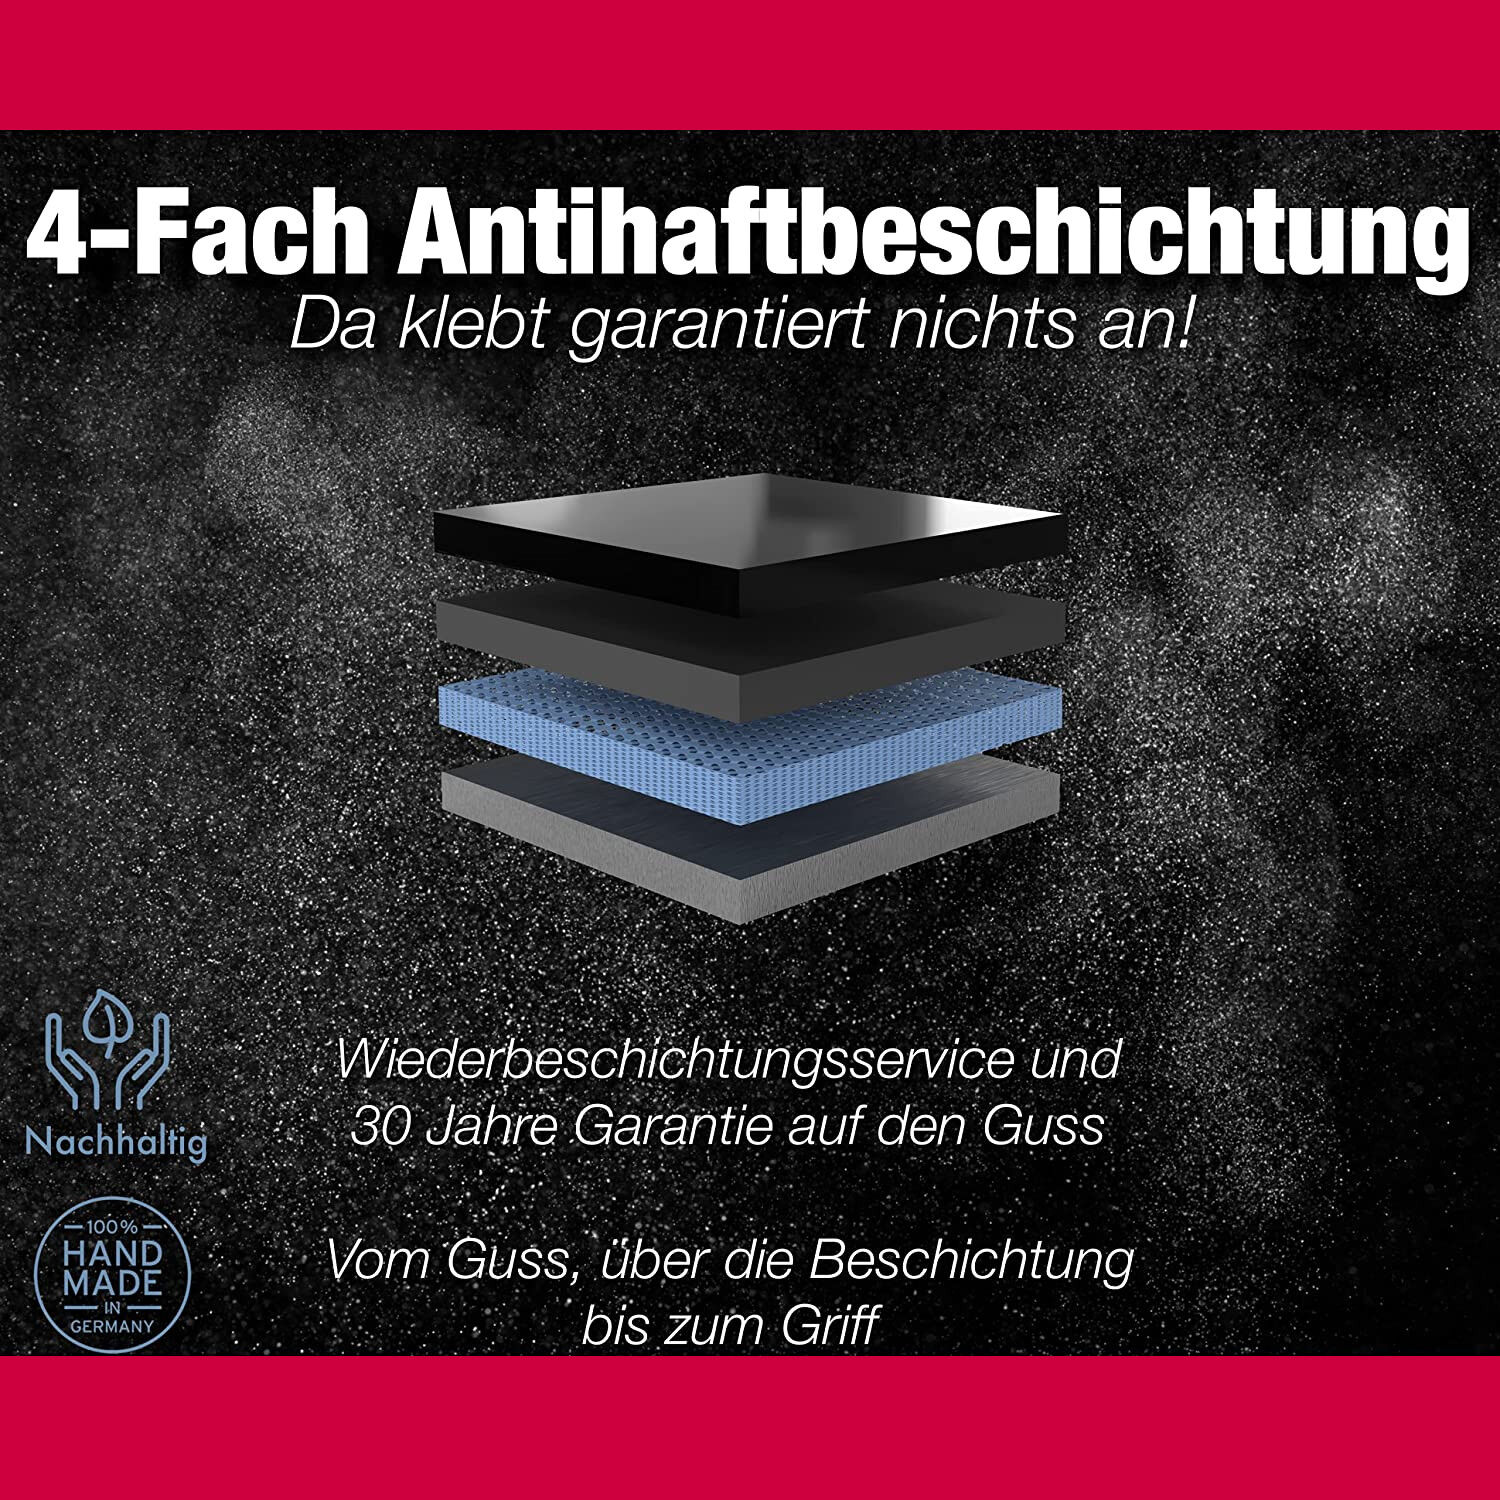 Ø 24cm Bratpfanne Aluguss Antihaftbeschichtet ~ 7cm Hochrand ~ Griff abnehmbar ~ Made in Germany